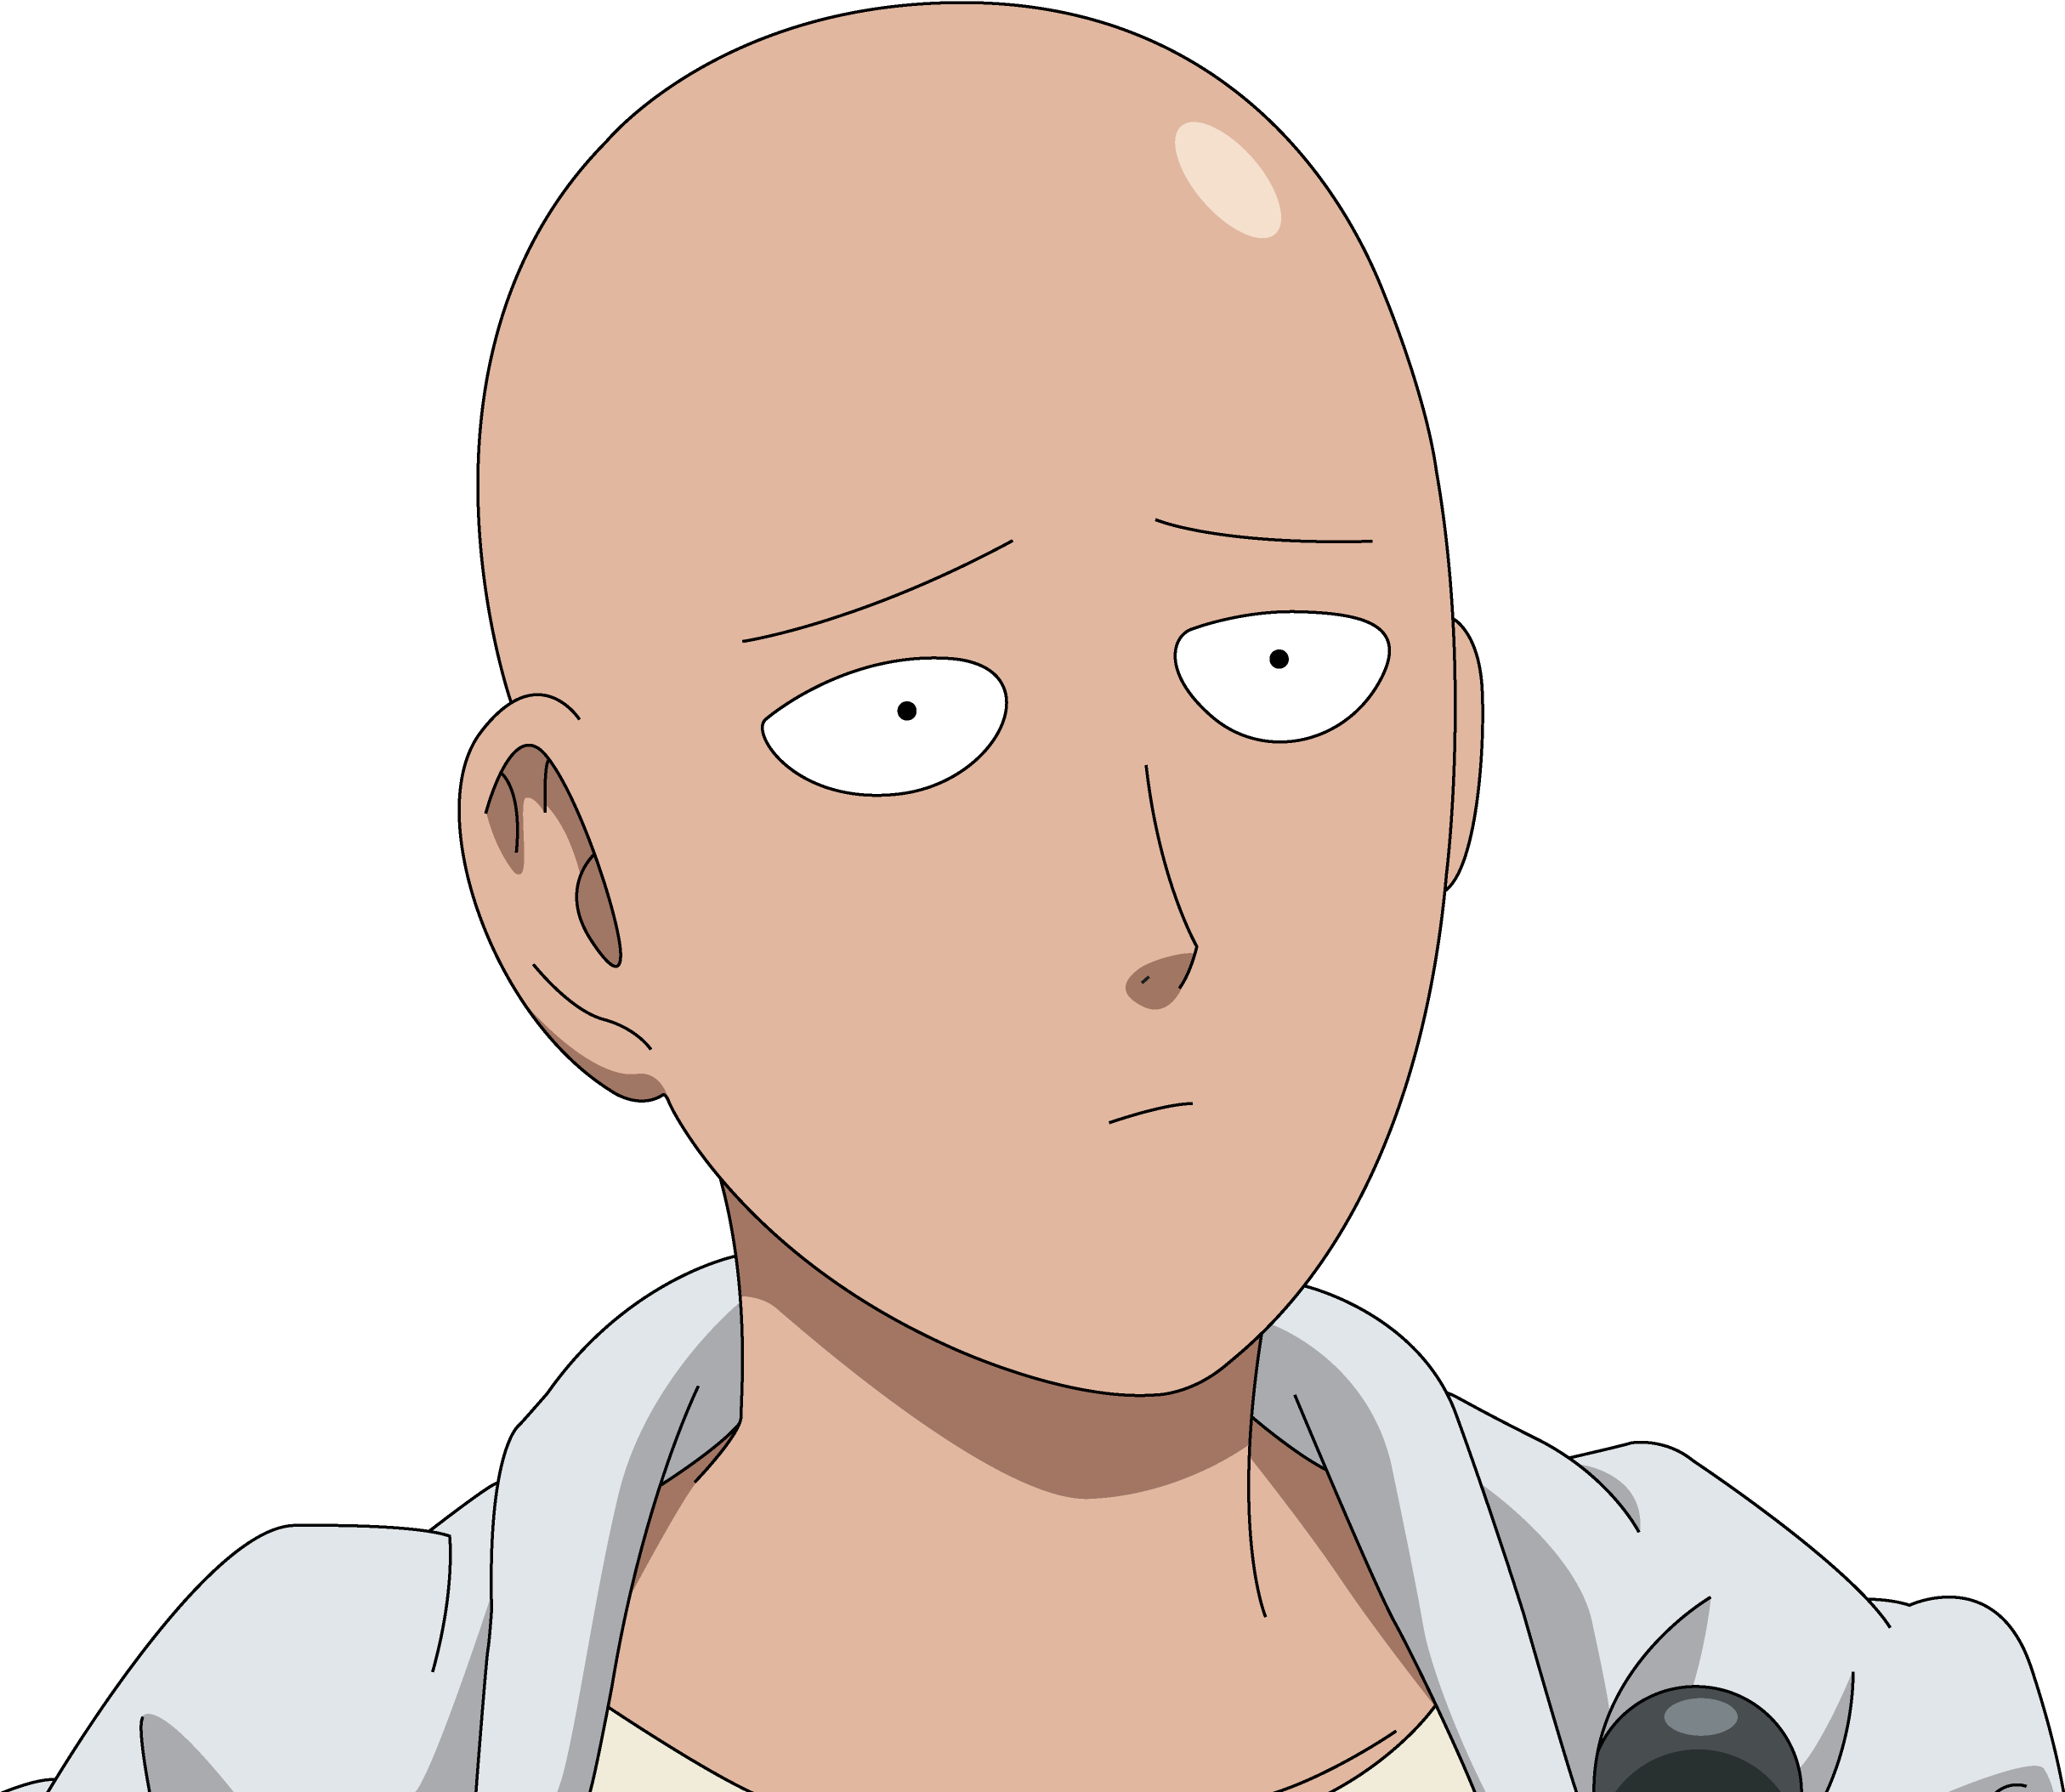 A Cartoon Of A Bald Man